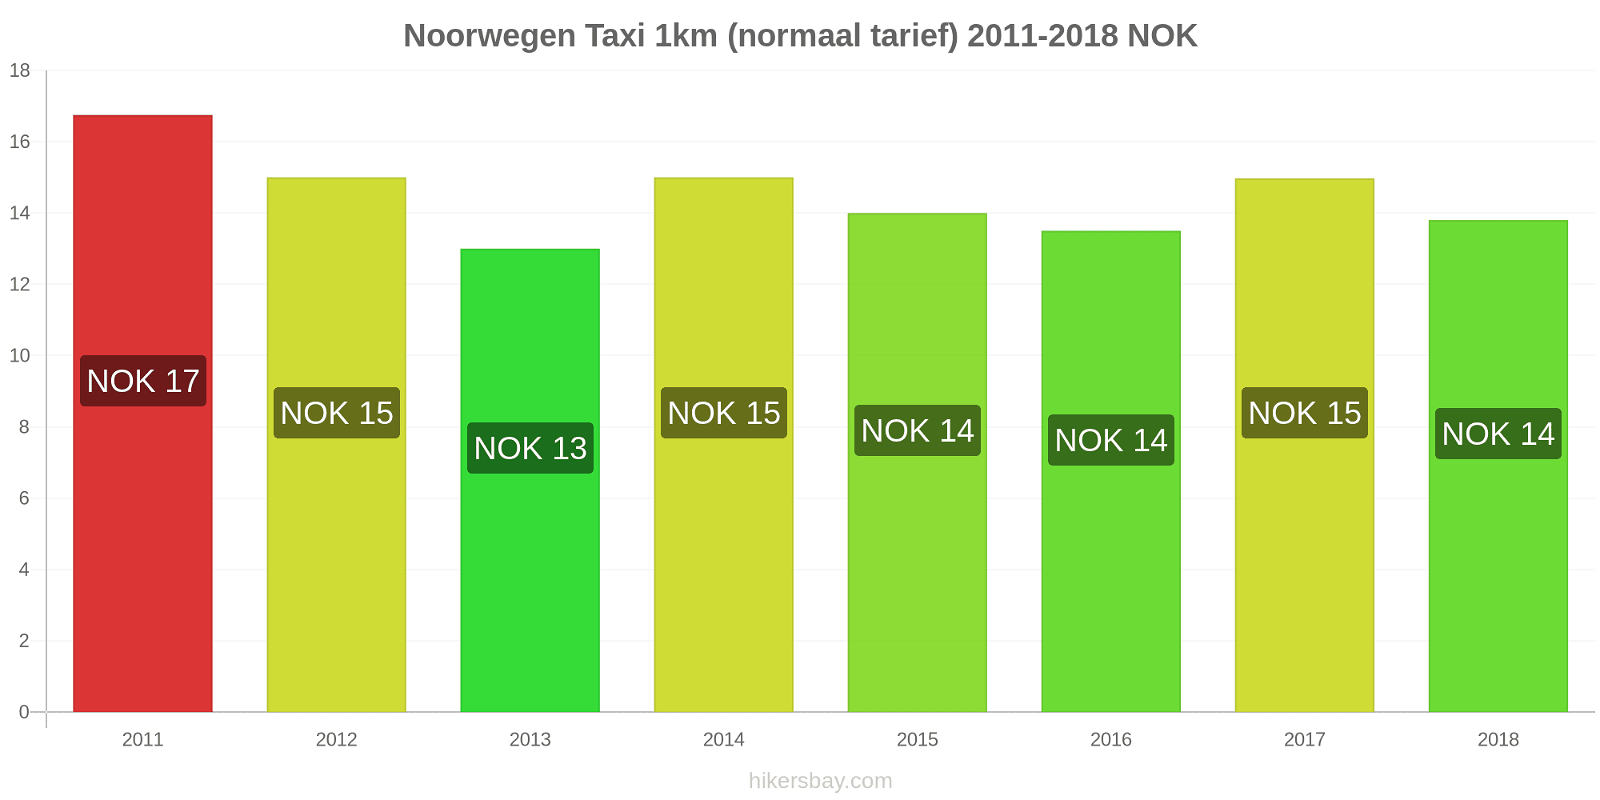 Noorwegen prijswijzigingen Taxi 1km (normaal tarief) hikersbay.com